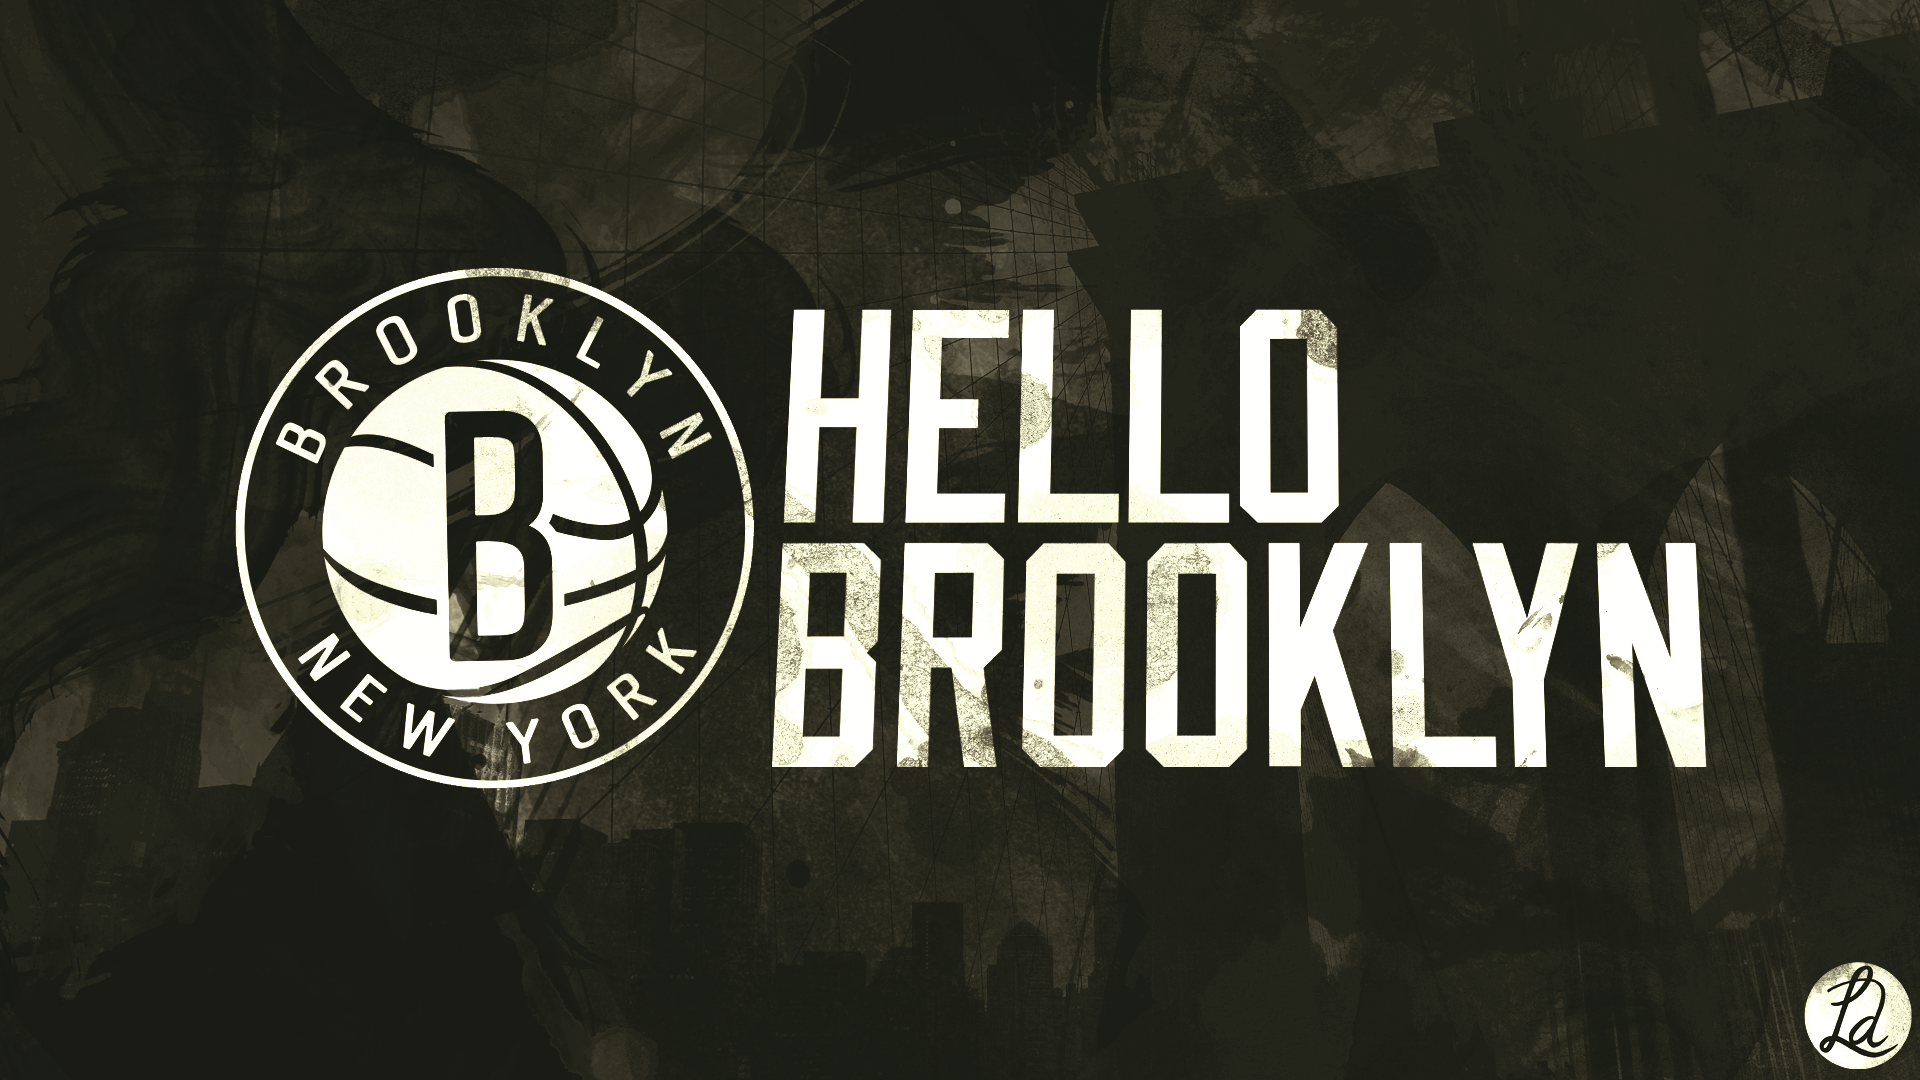 100+] Brooklyn Nets Wallpapers